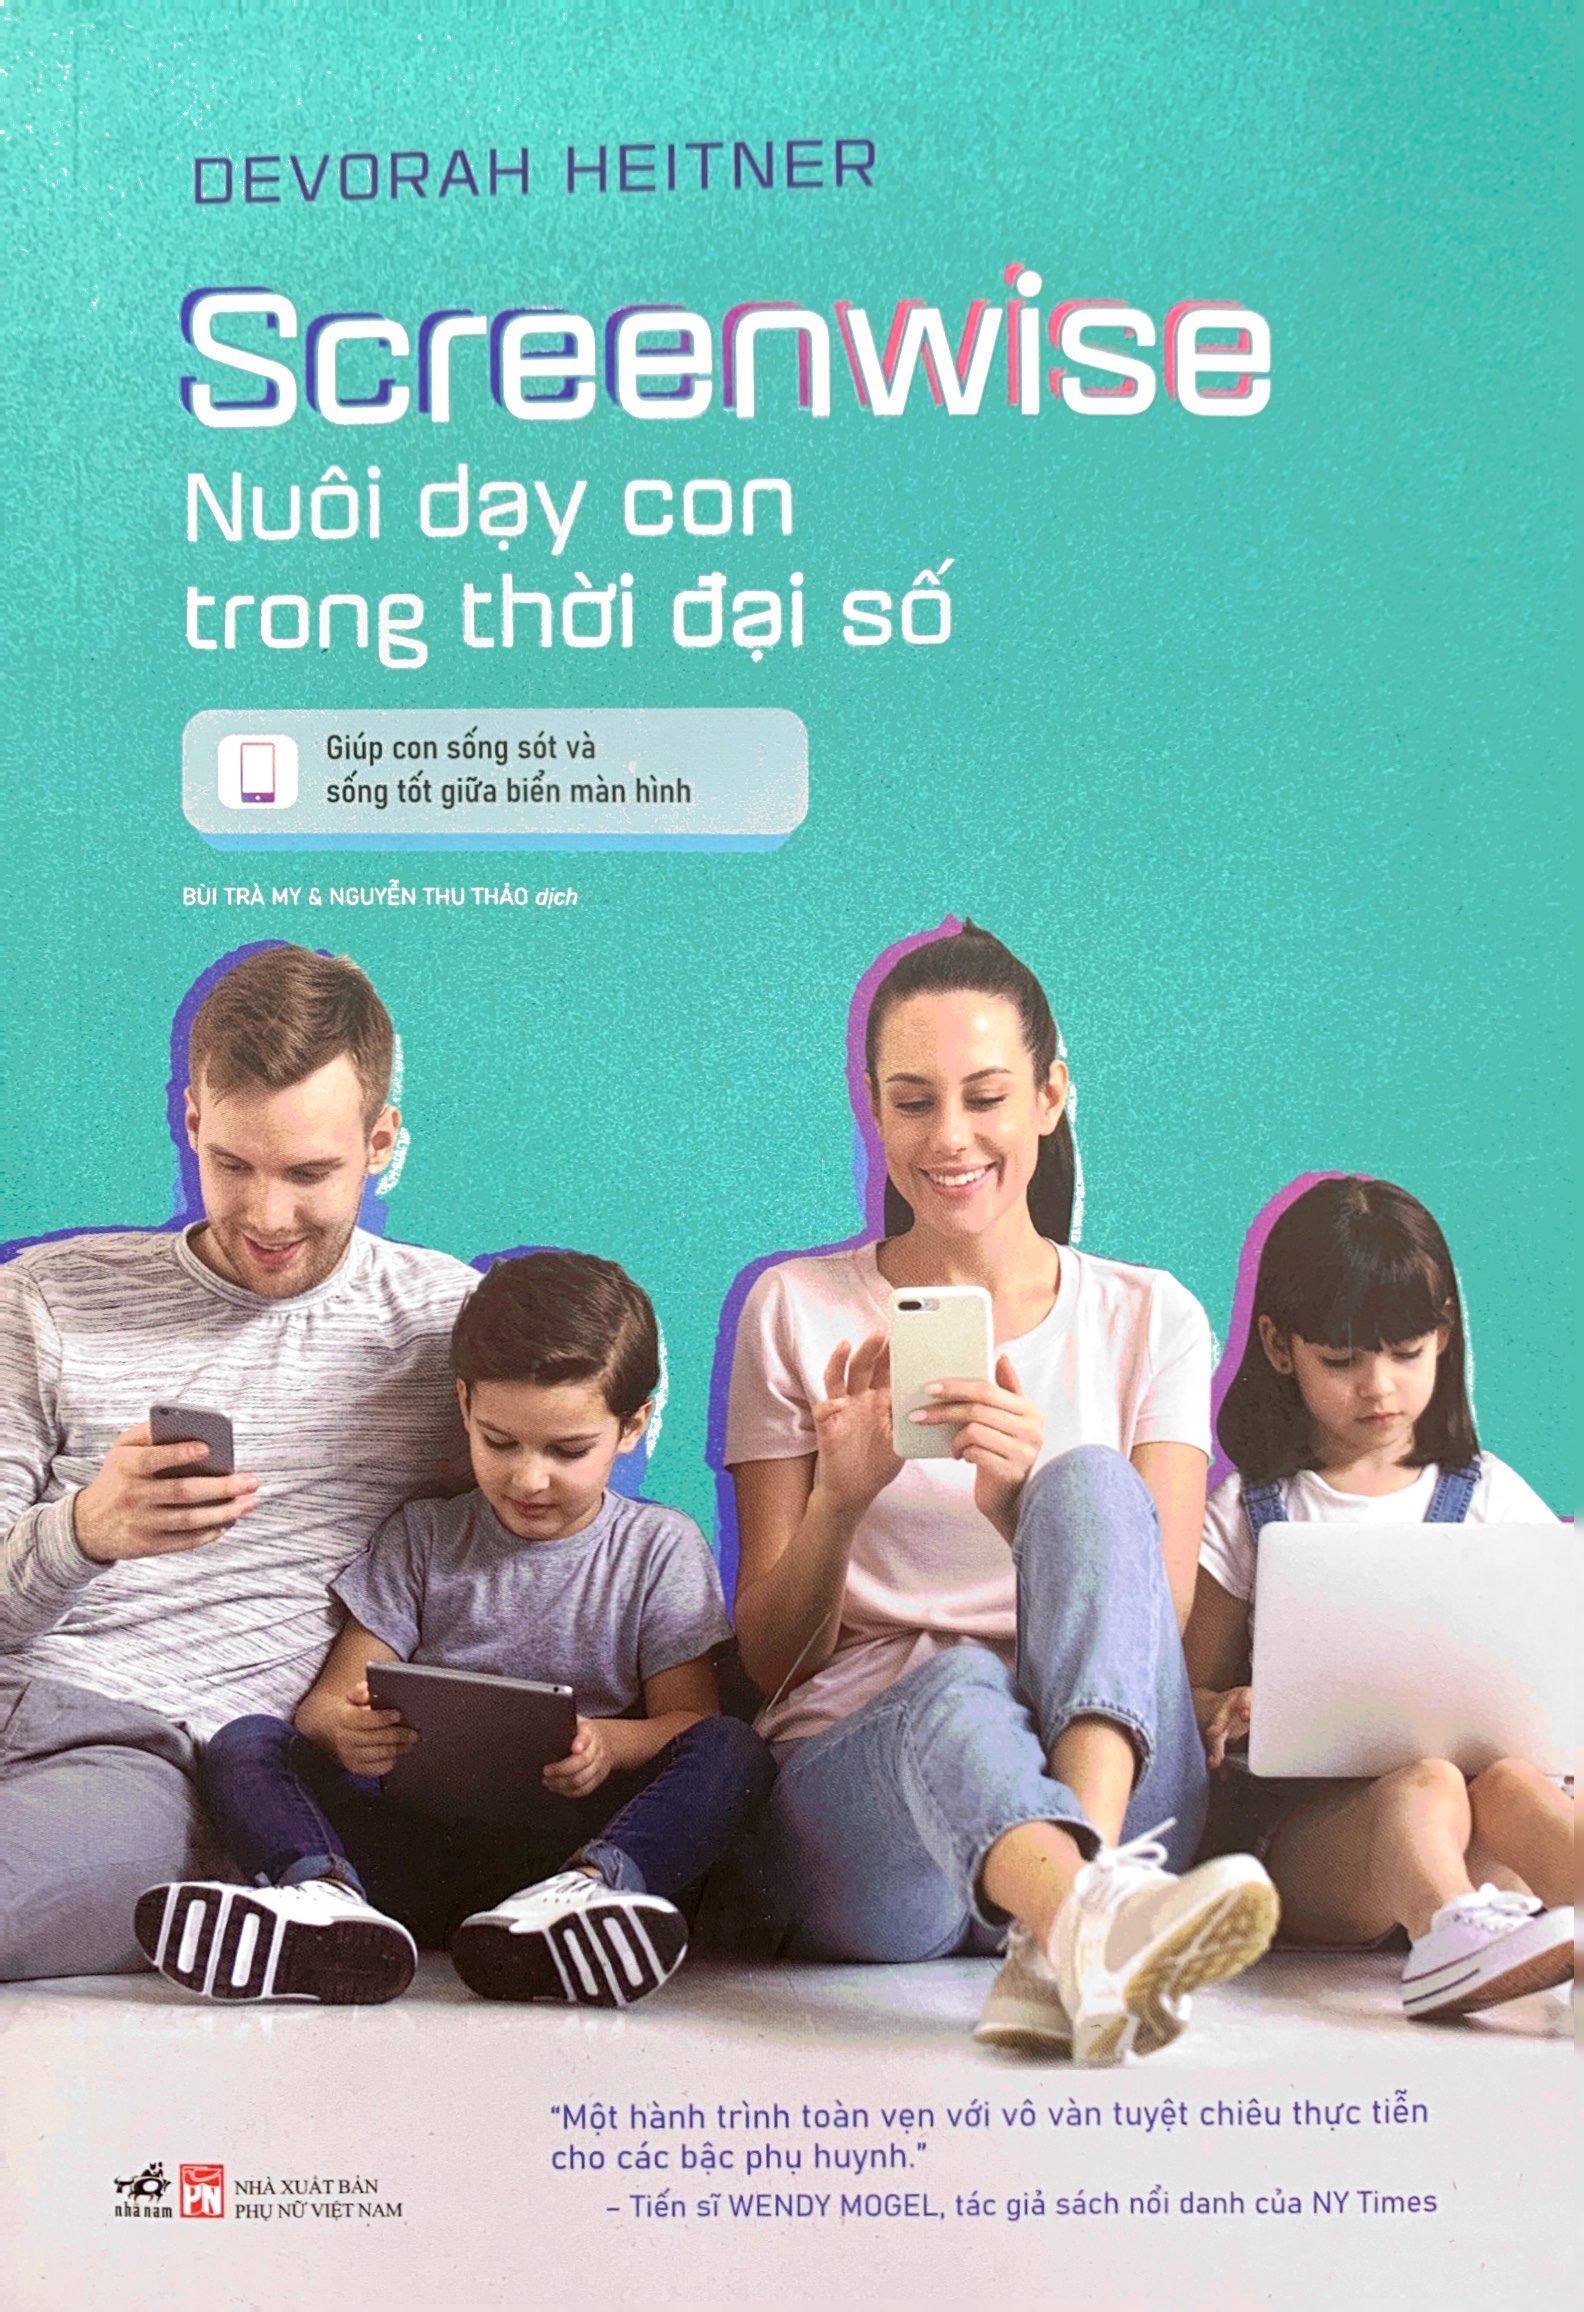 Screenwise - Nuôi Dạy Con Trong Thời Đại Số PDF